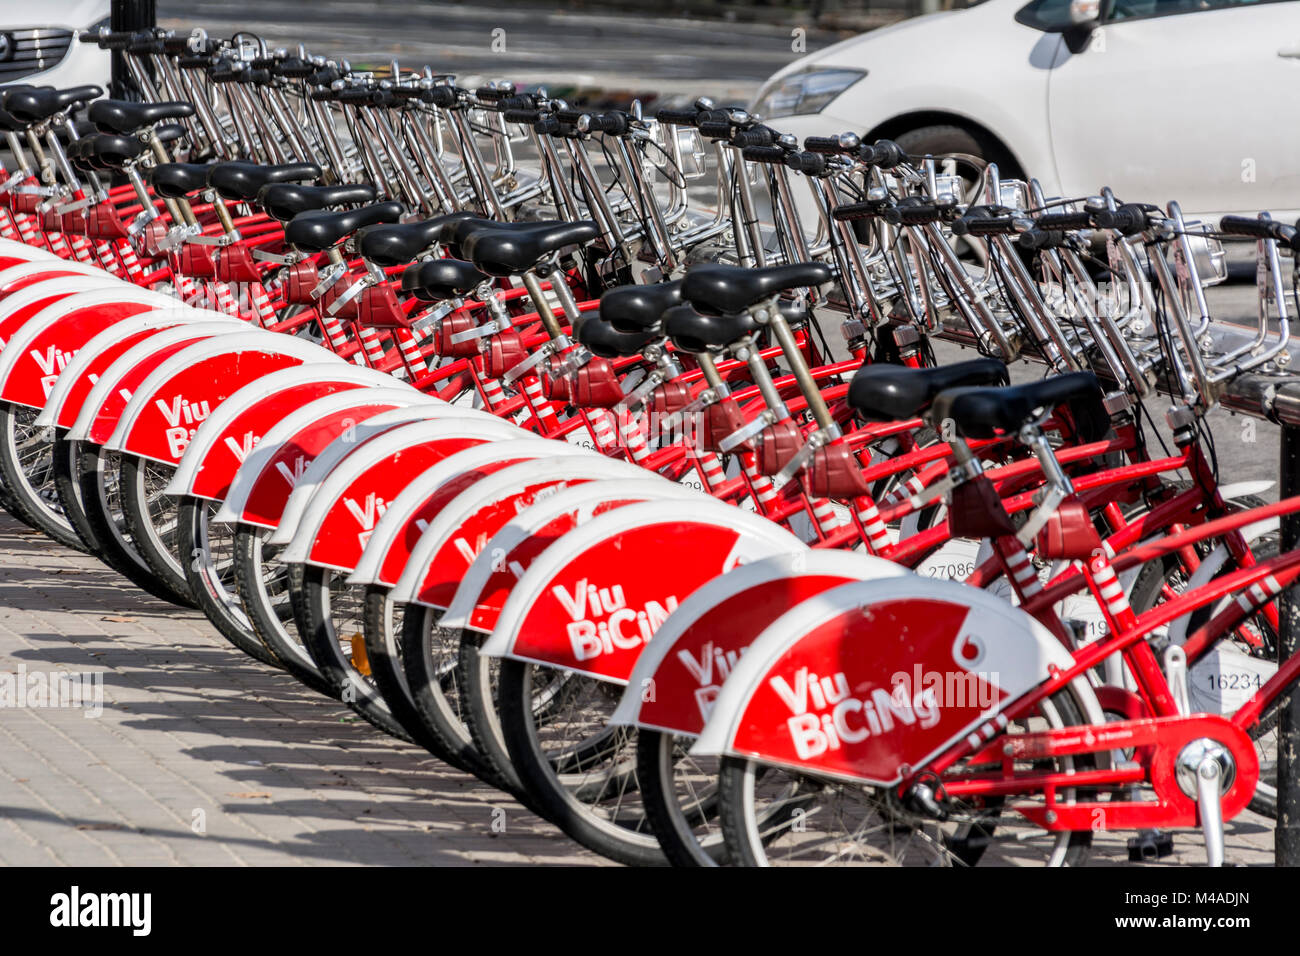 Leihfahrräder in Barcelona mit dem auffälligen Design Stock Photo